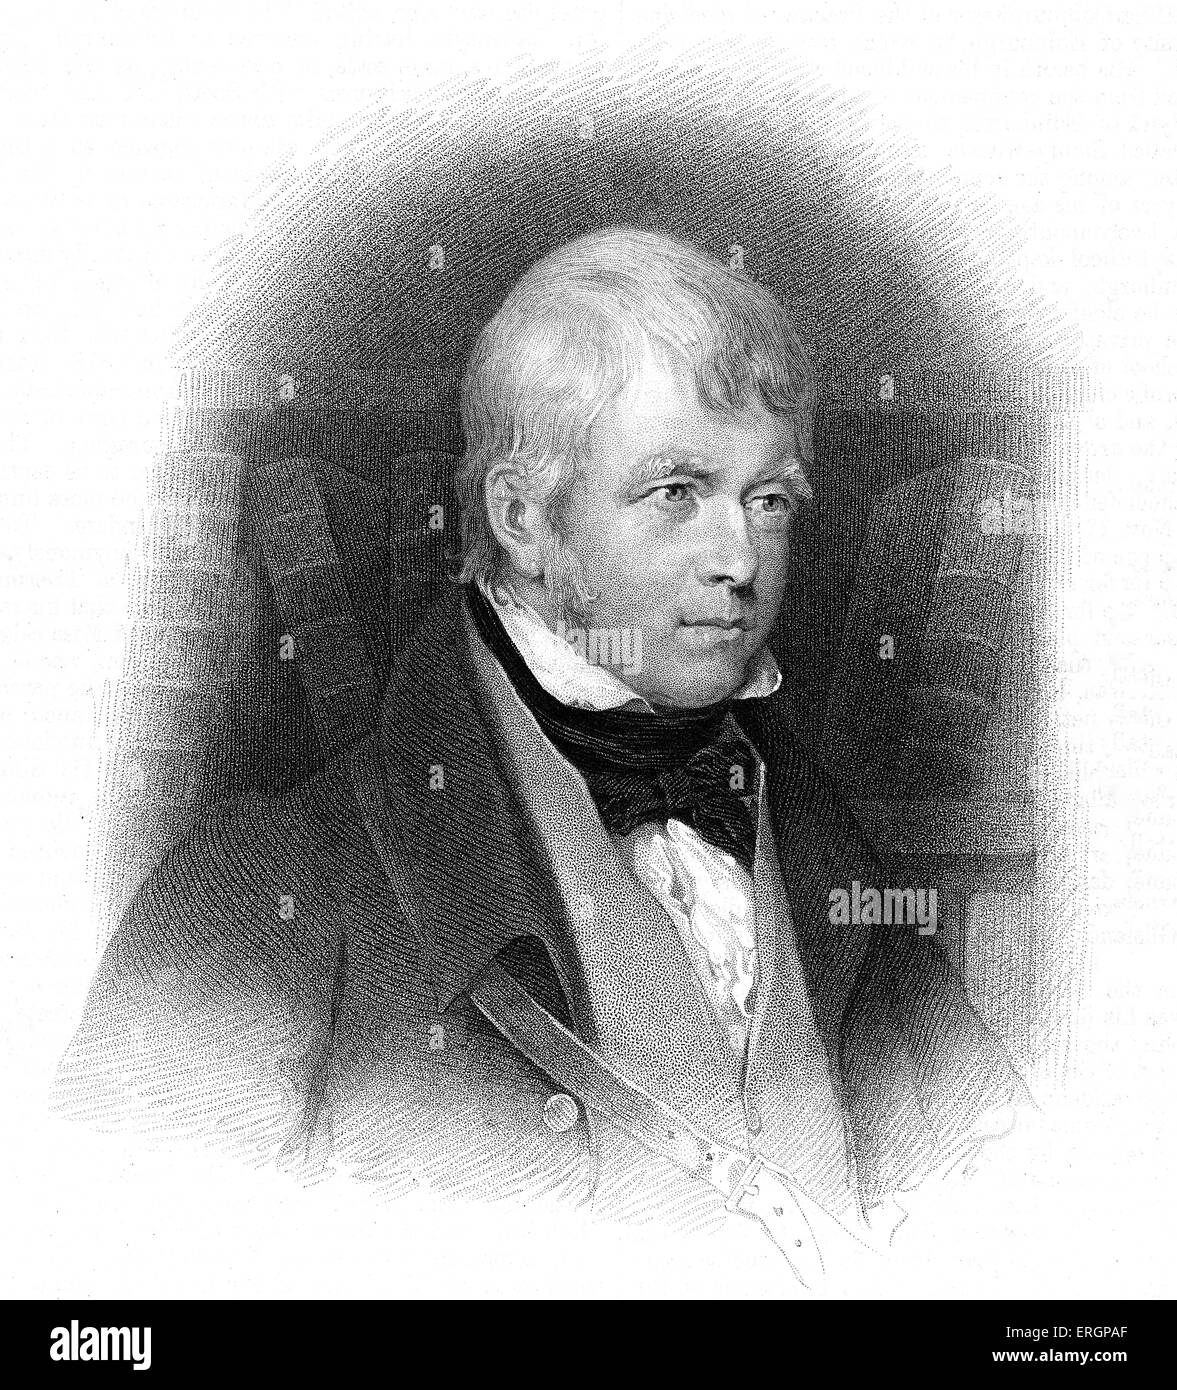 Walter Scott. Histórico escocés, novelista, dramaturgo y poeta. Grabado por William Finden 1787 - 20 de septiembre de 1852. W. S. 5 Foto de stock